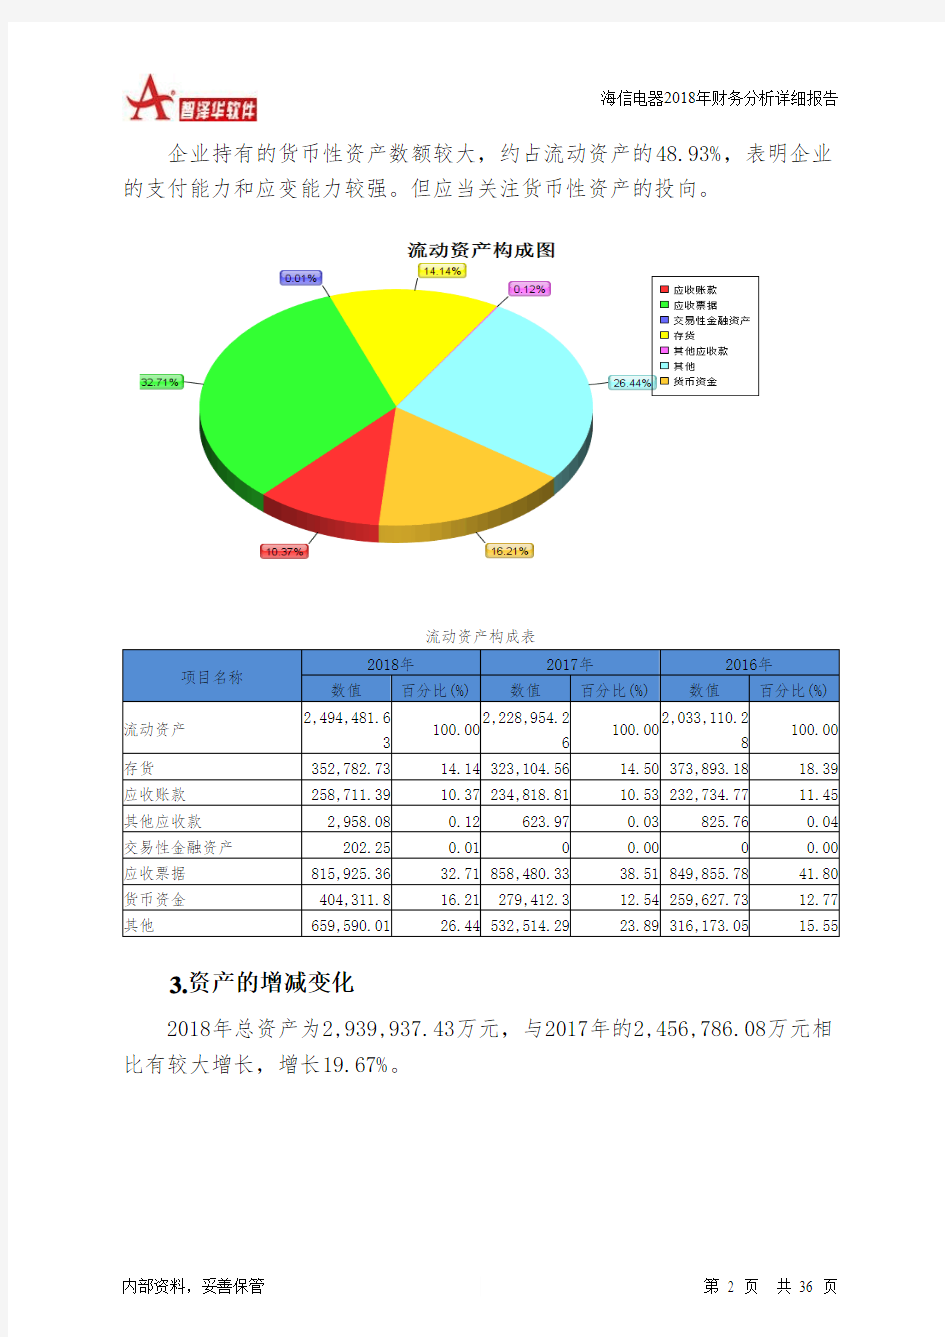 海信电器2018年财务分析详细报告-智泽华